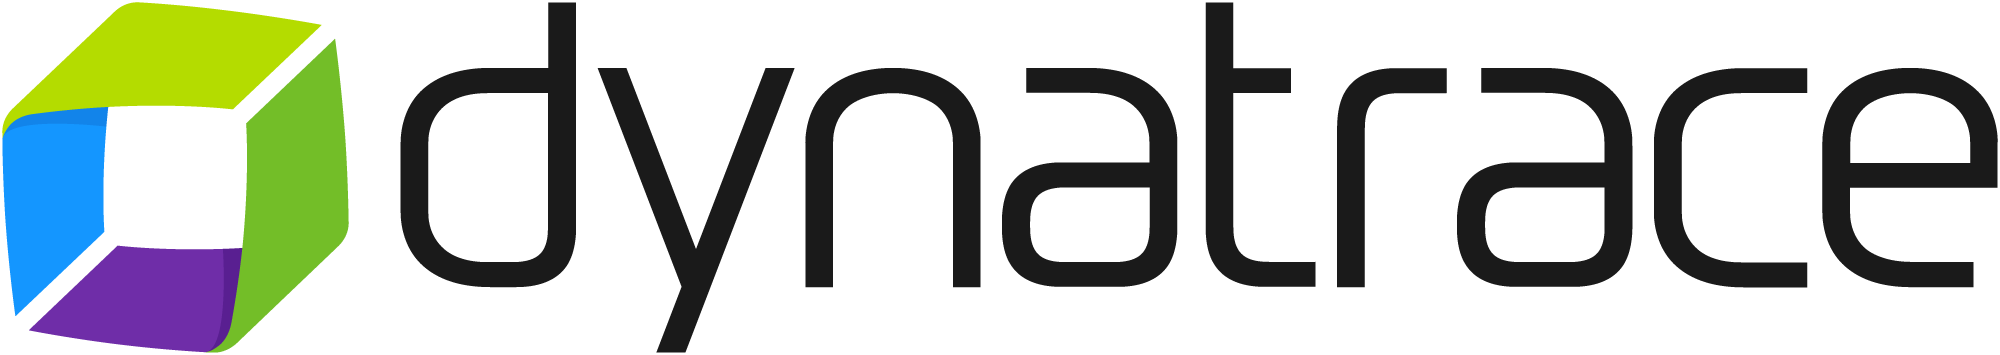 Dynatrace logója